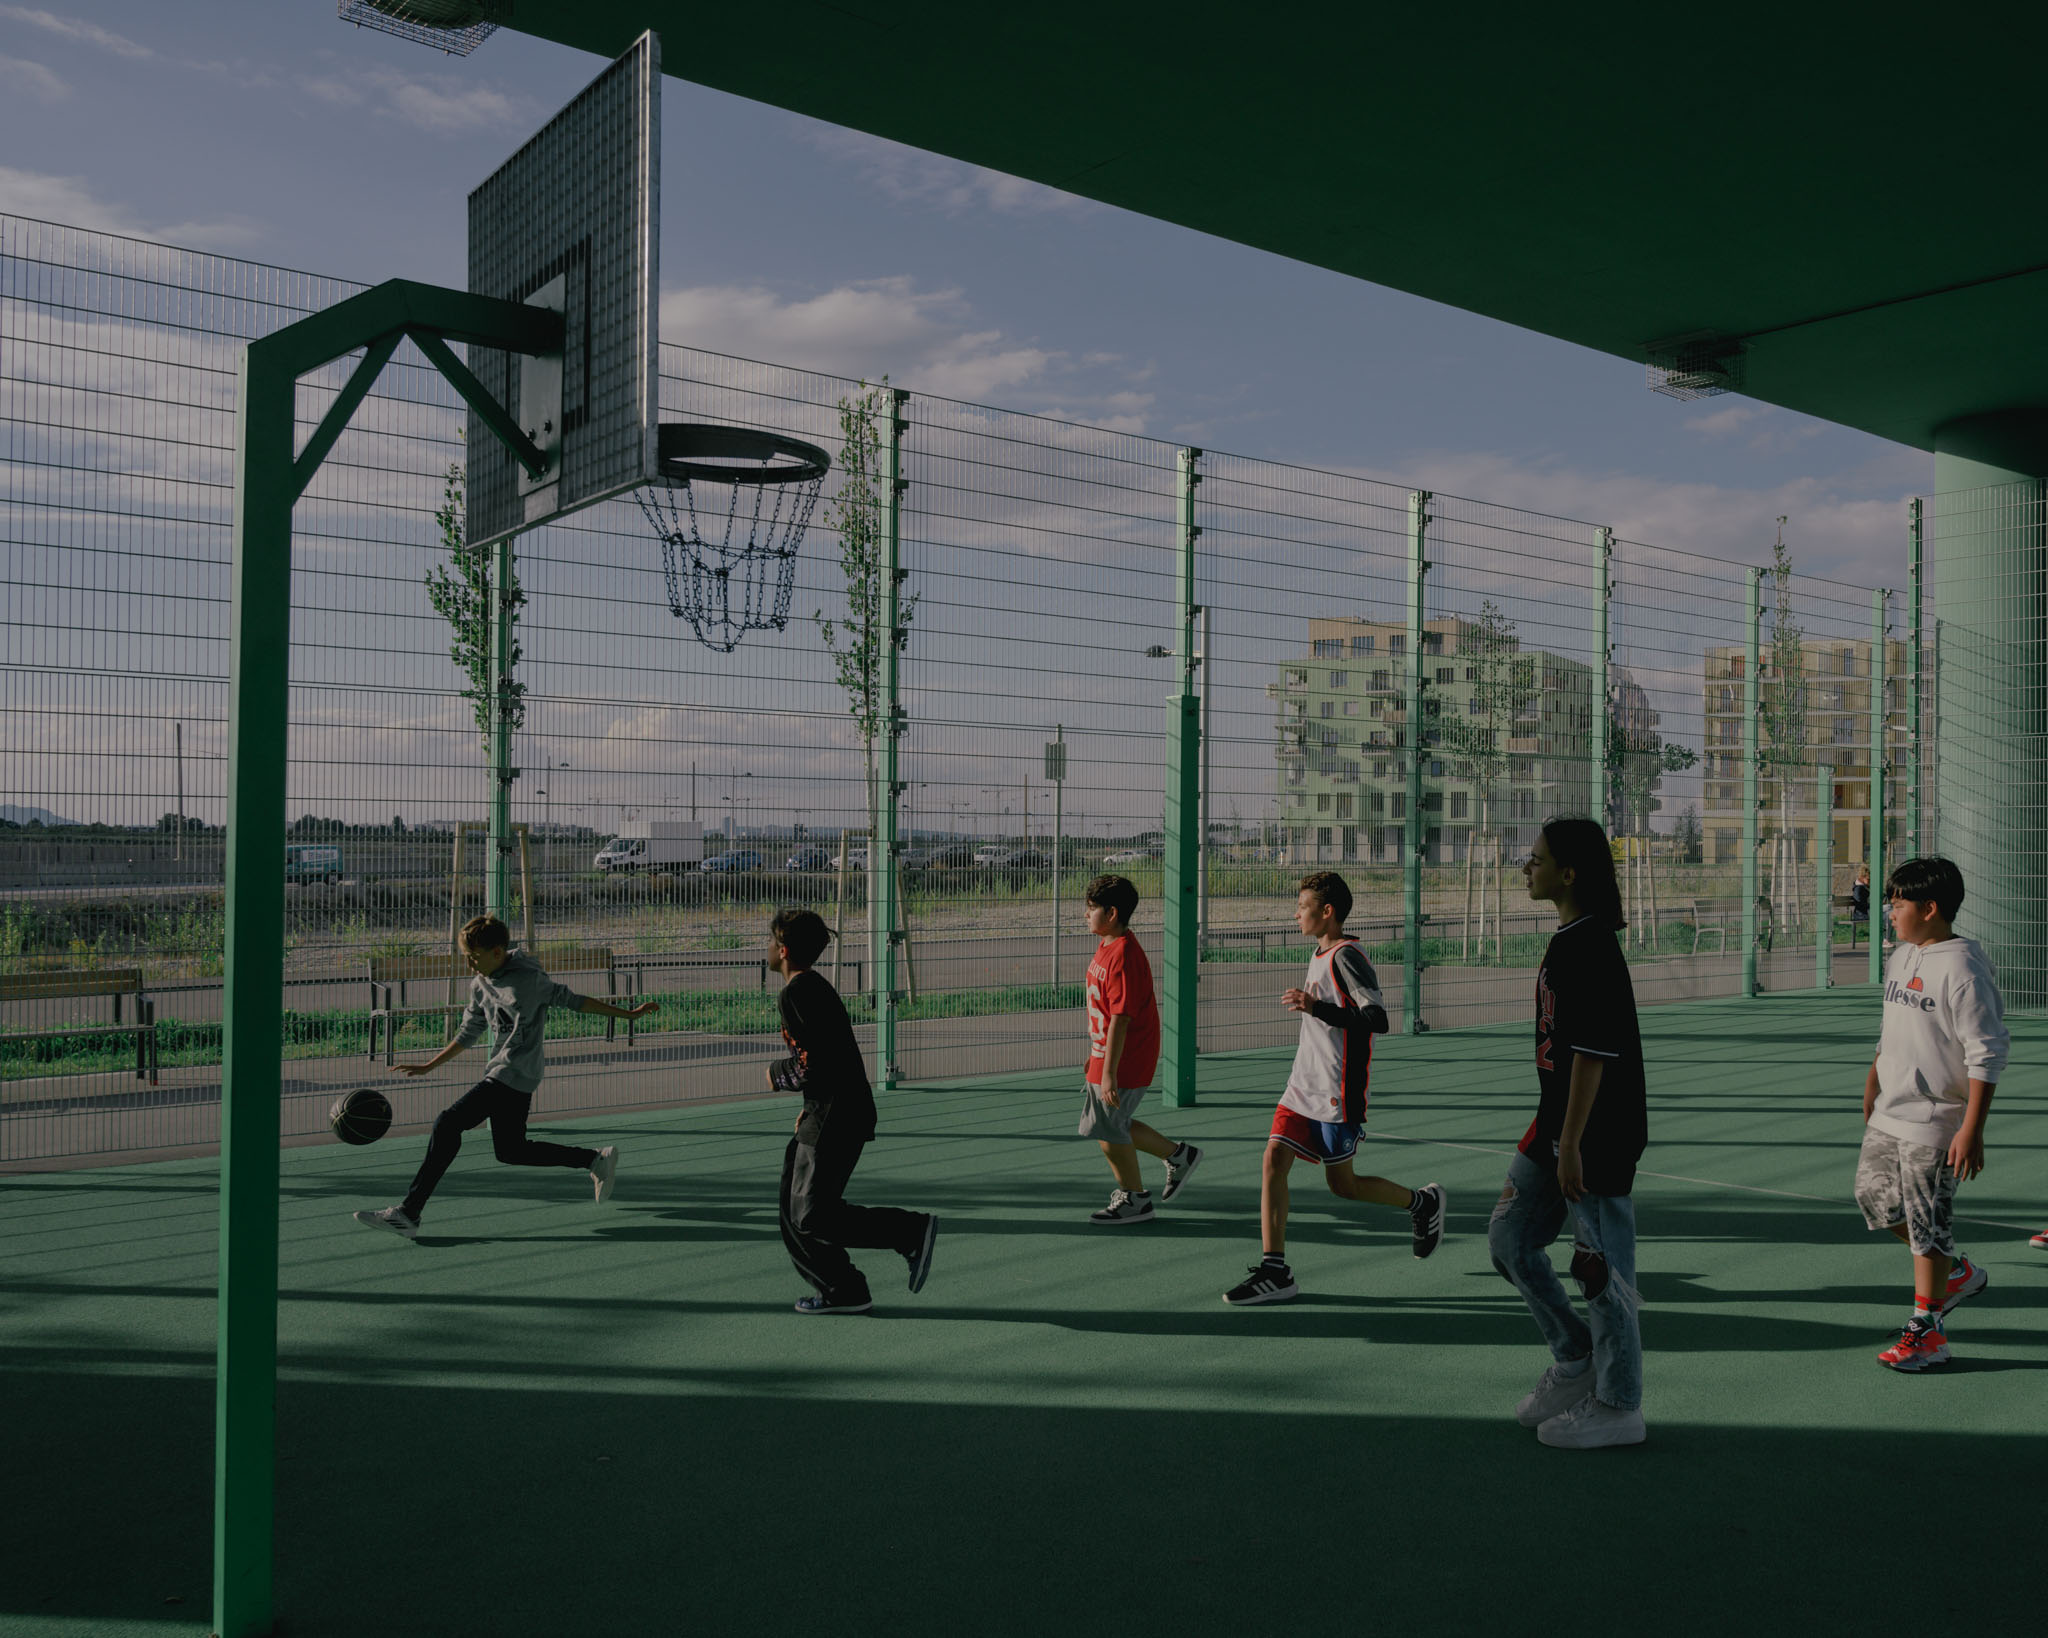 Bölgede asma köprünün altına basketbol ve futbol sahaları, tırmanma tesisleri ve oyun alanları yapıldı. "Seebogen'im" Viyana, Avusturya mahalle.  Çocuklar 26 Eylül 2022'de birlikte oynarken görülüyor. (TIME için Ingmar Björn Nolting)